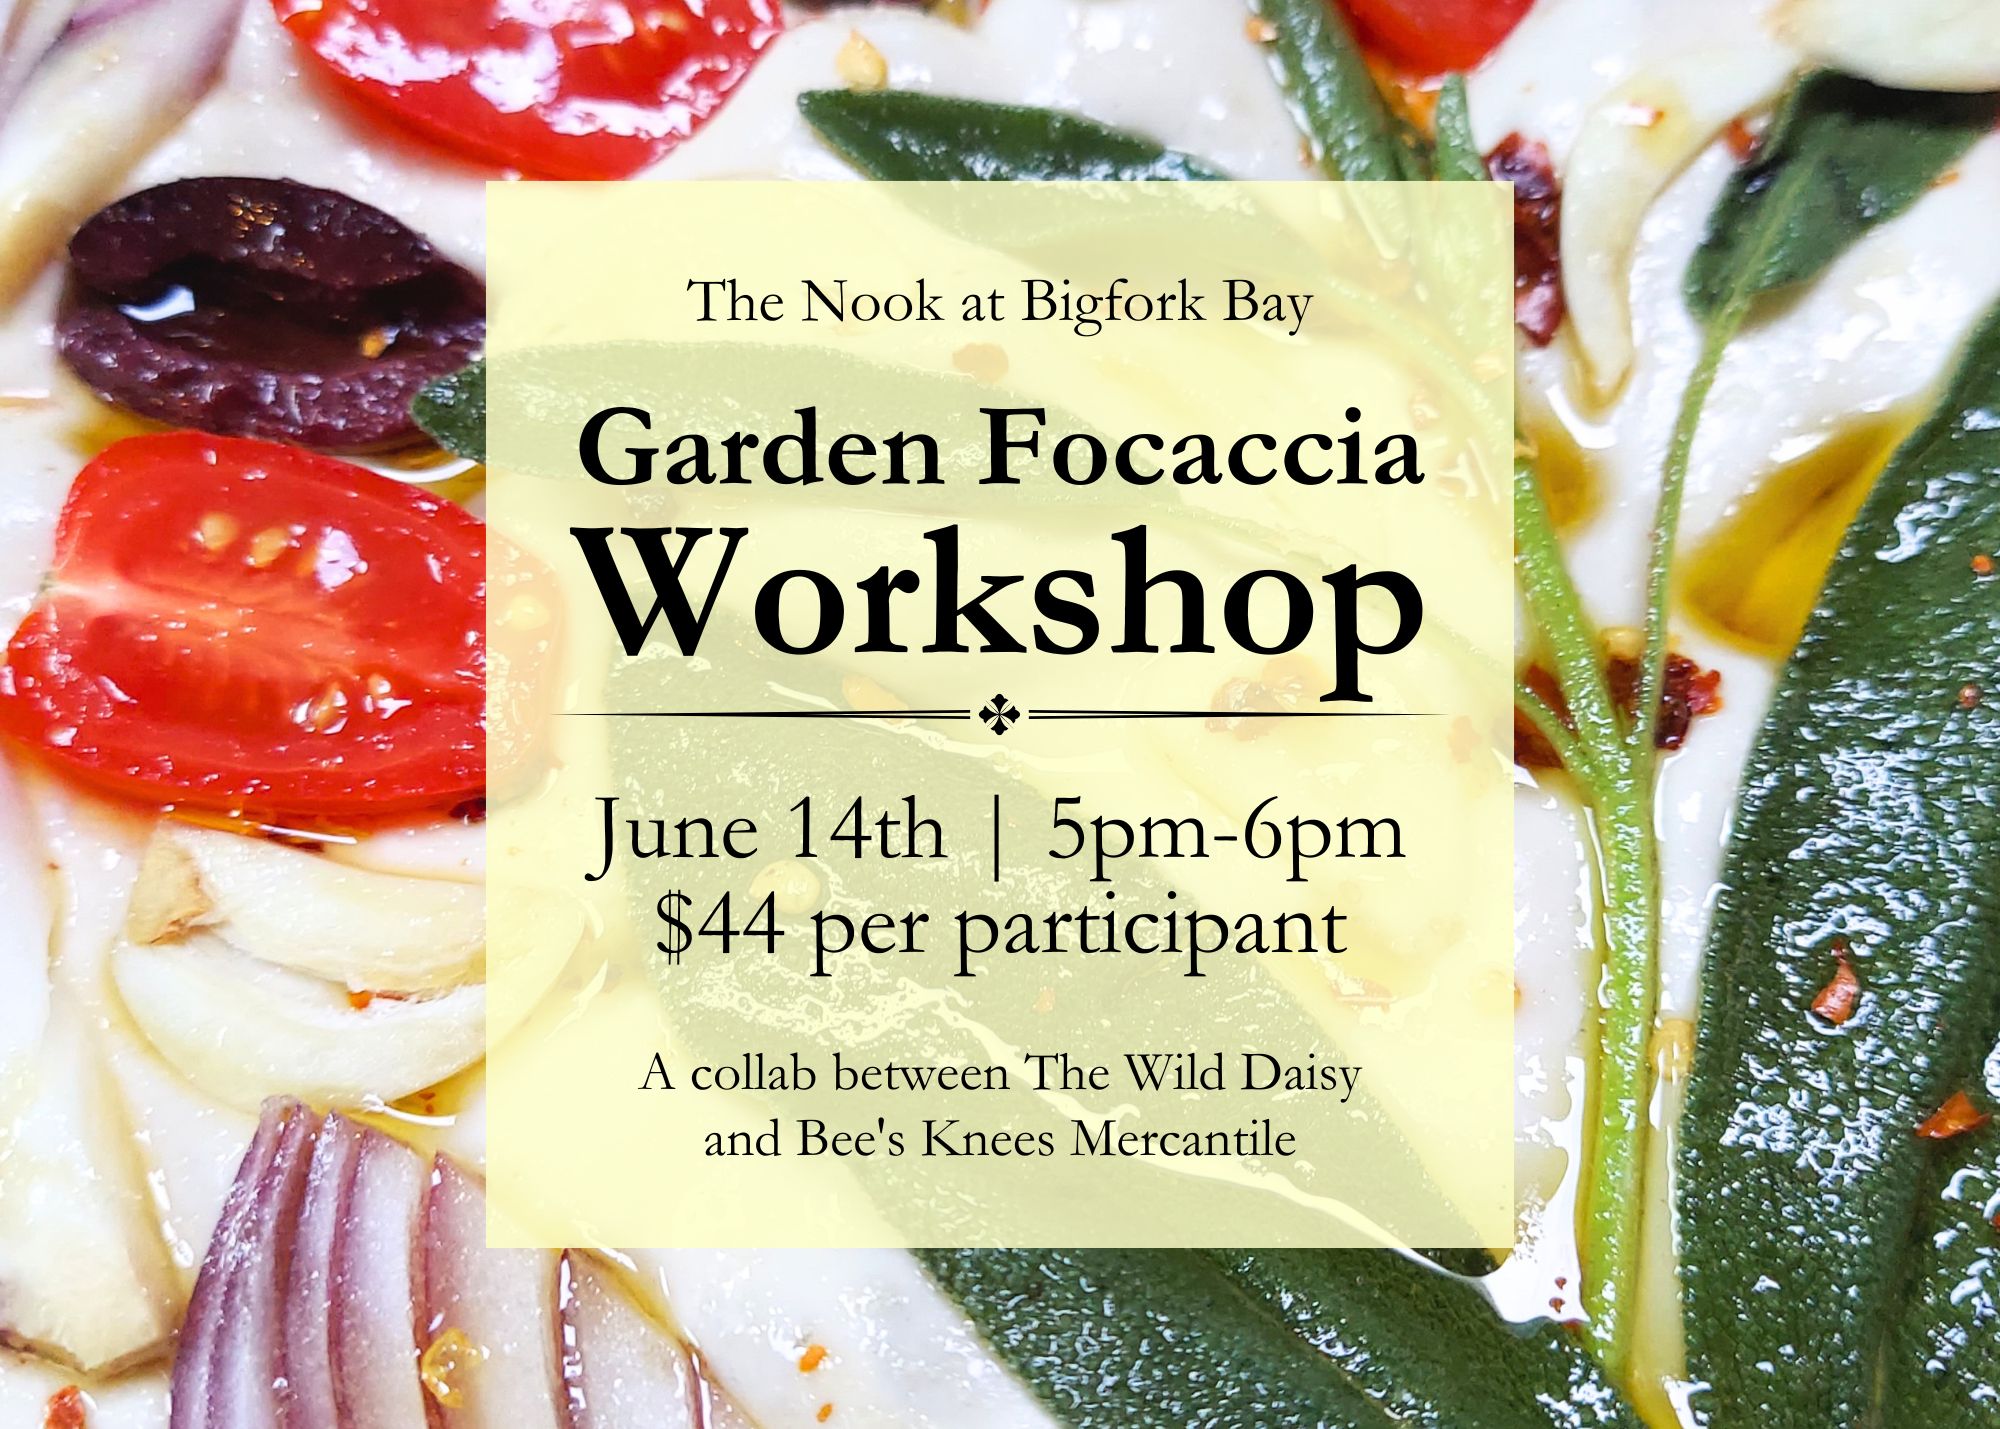 Garden Focaccia Workshop at The Nook